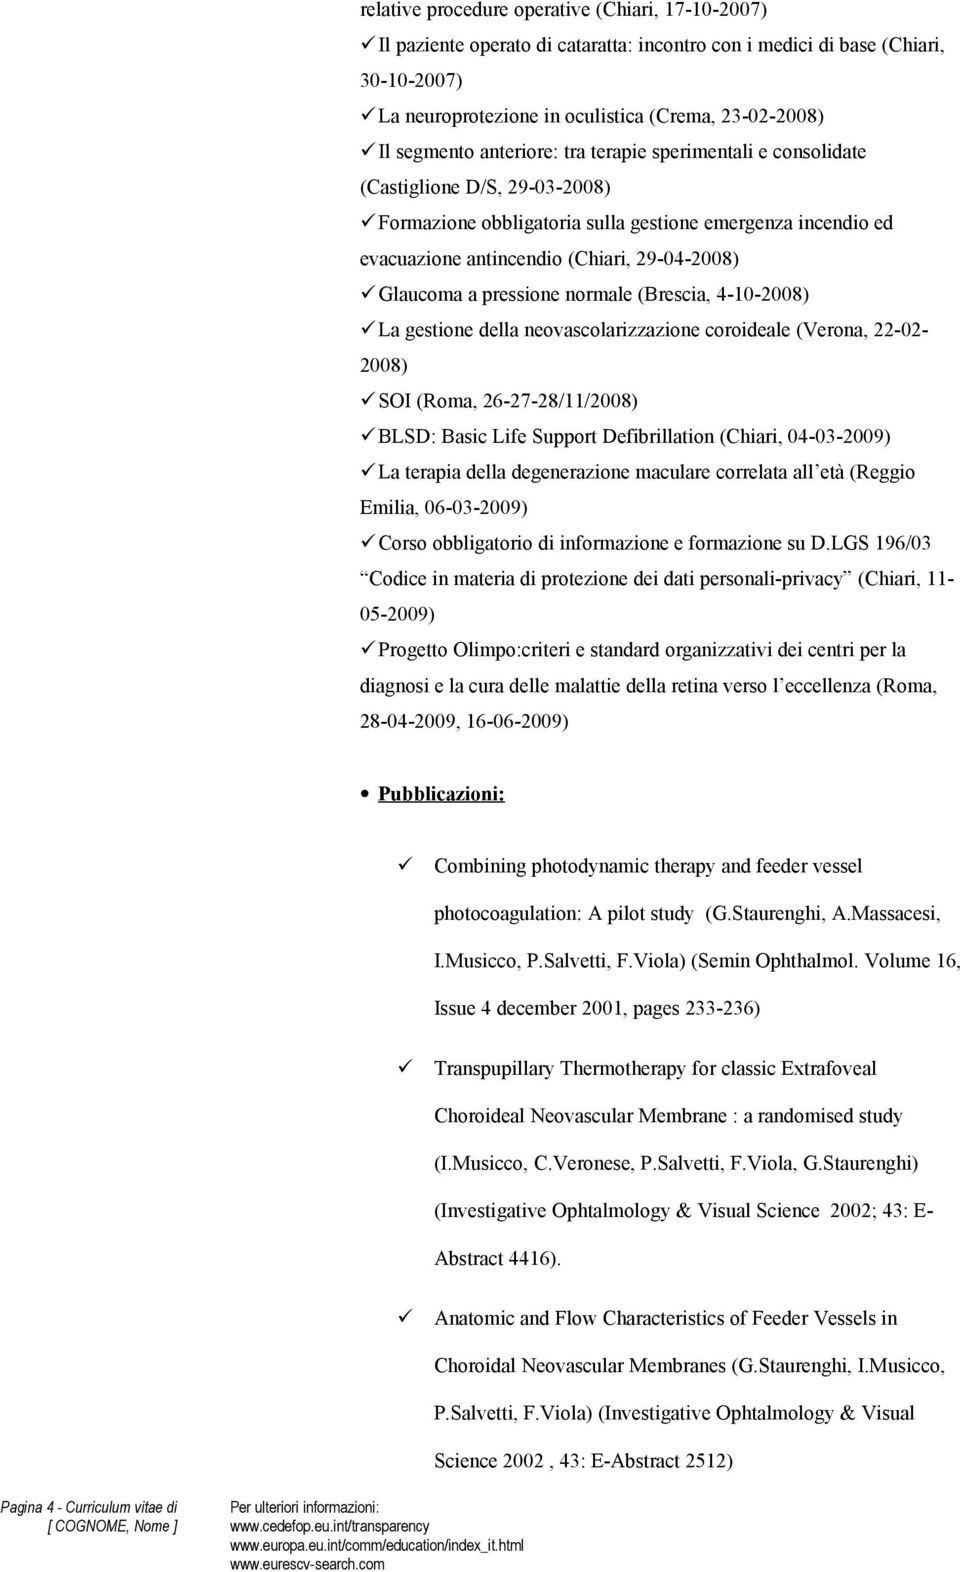 pressione normale (Brescia, 4-10-2008) La gestione della neovascolarizzazione coroideale (Verona, 22-02- 2008) SOI (Roma, 26-27-28/11/2008) BLSD: Basic Life Support Defibrillation (Chiari,